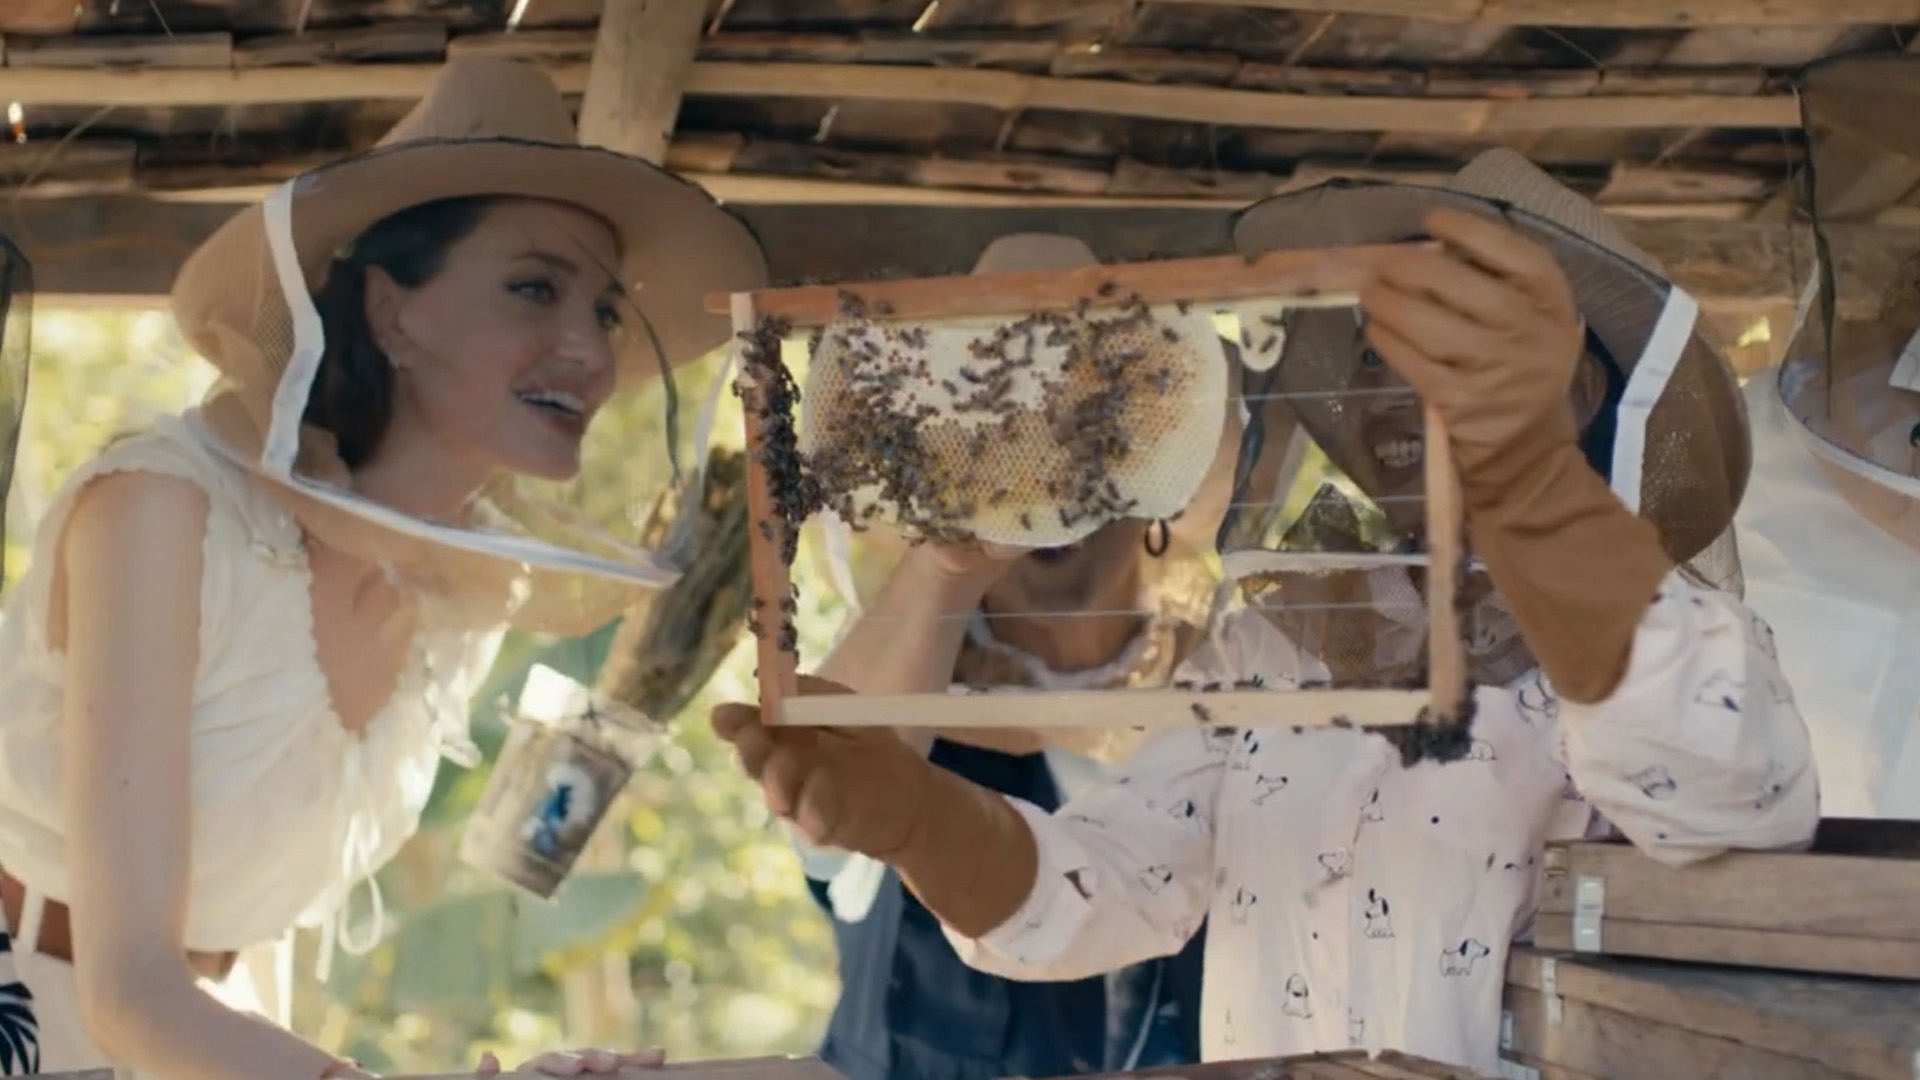 Jolie es madrina del programa “Mujeres por las abejas”, impulsado por Guerlain y el Observatorio Francés de Apicultura, y respaldado por la UNESCO. Una acción que, ahora, la llevó a Camboya